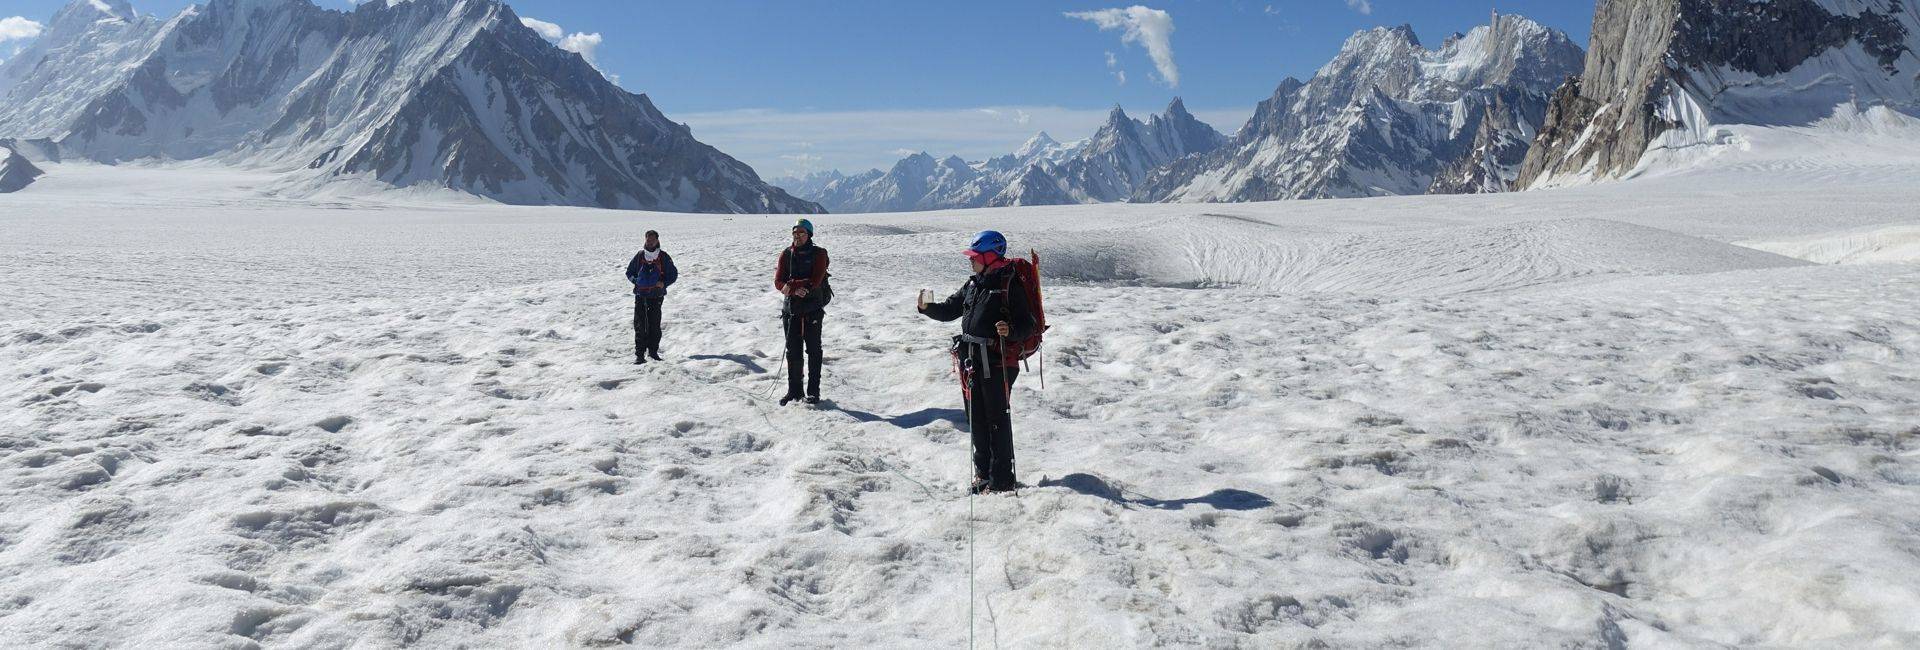 Snow Lake & Hispar La trek in Pakistan